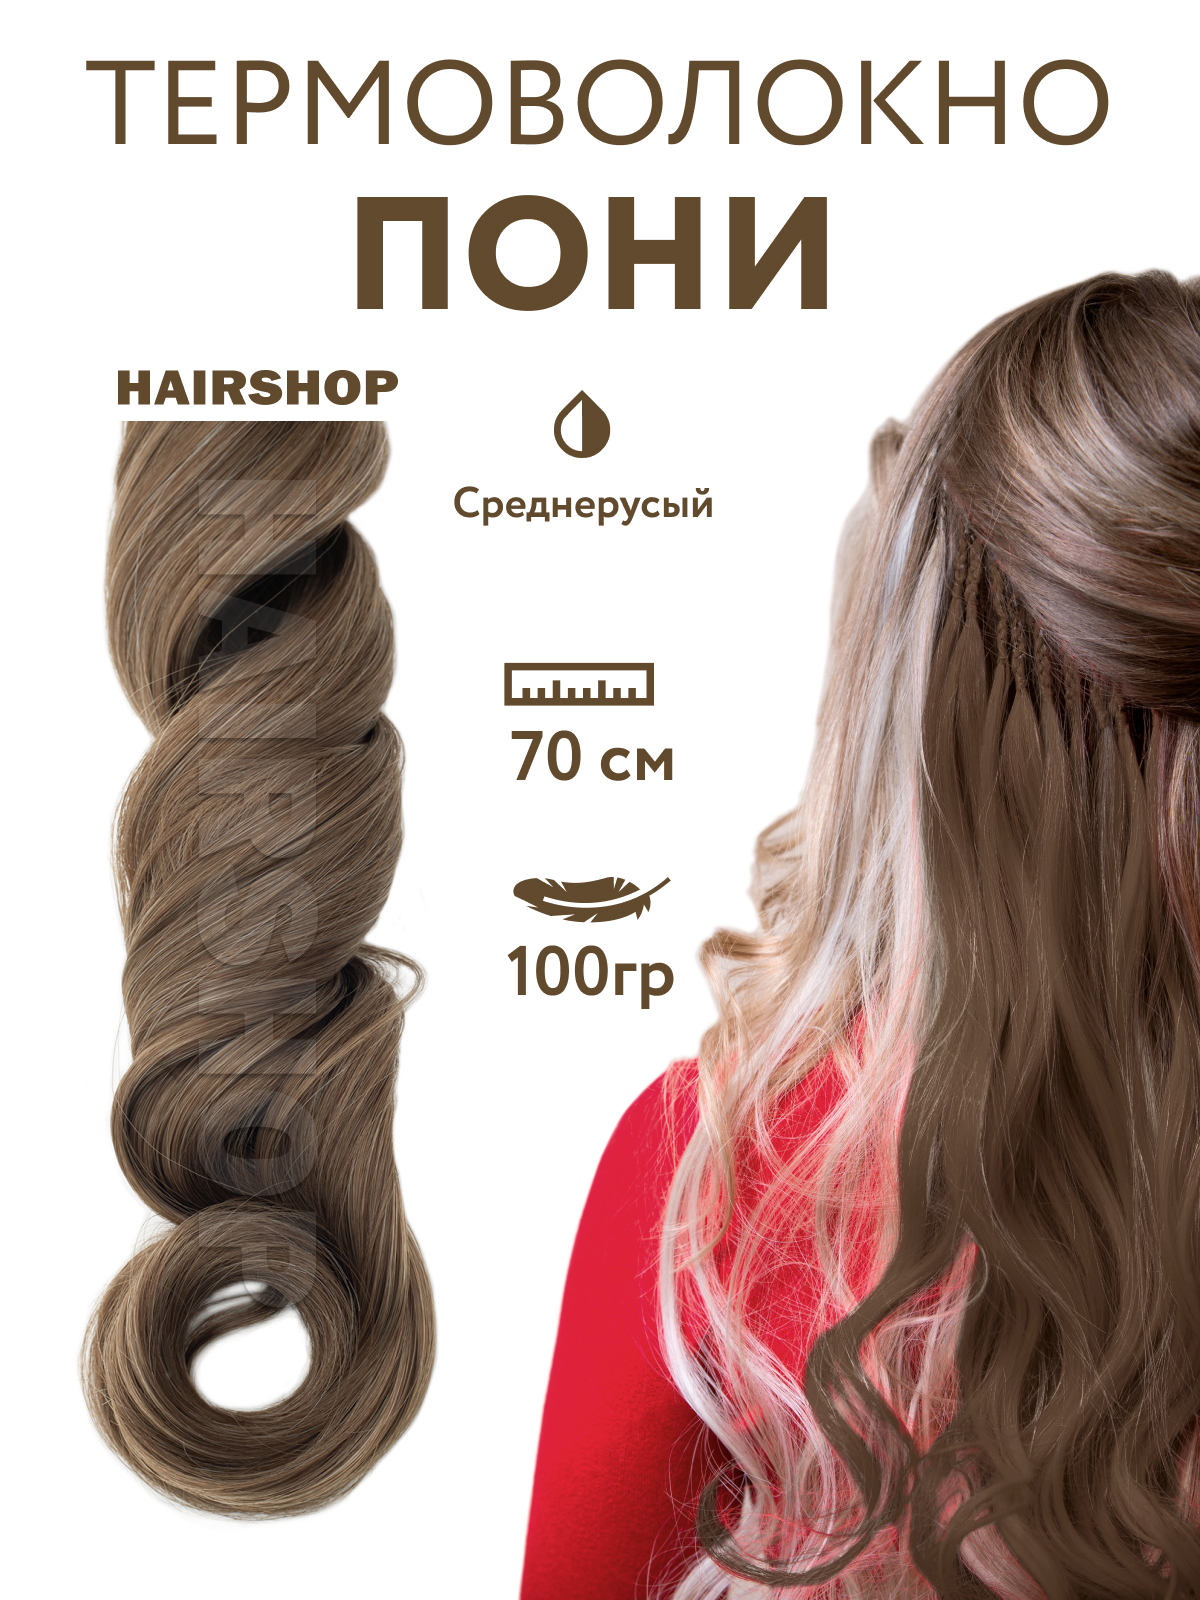 Канекалон Hairshop Пони HairUp для точечного афронаращивания Средне-русый 1,4м канекалон hairshop пони hairup для точечного афронаращивания средне русый 1 4м